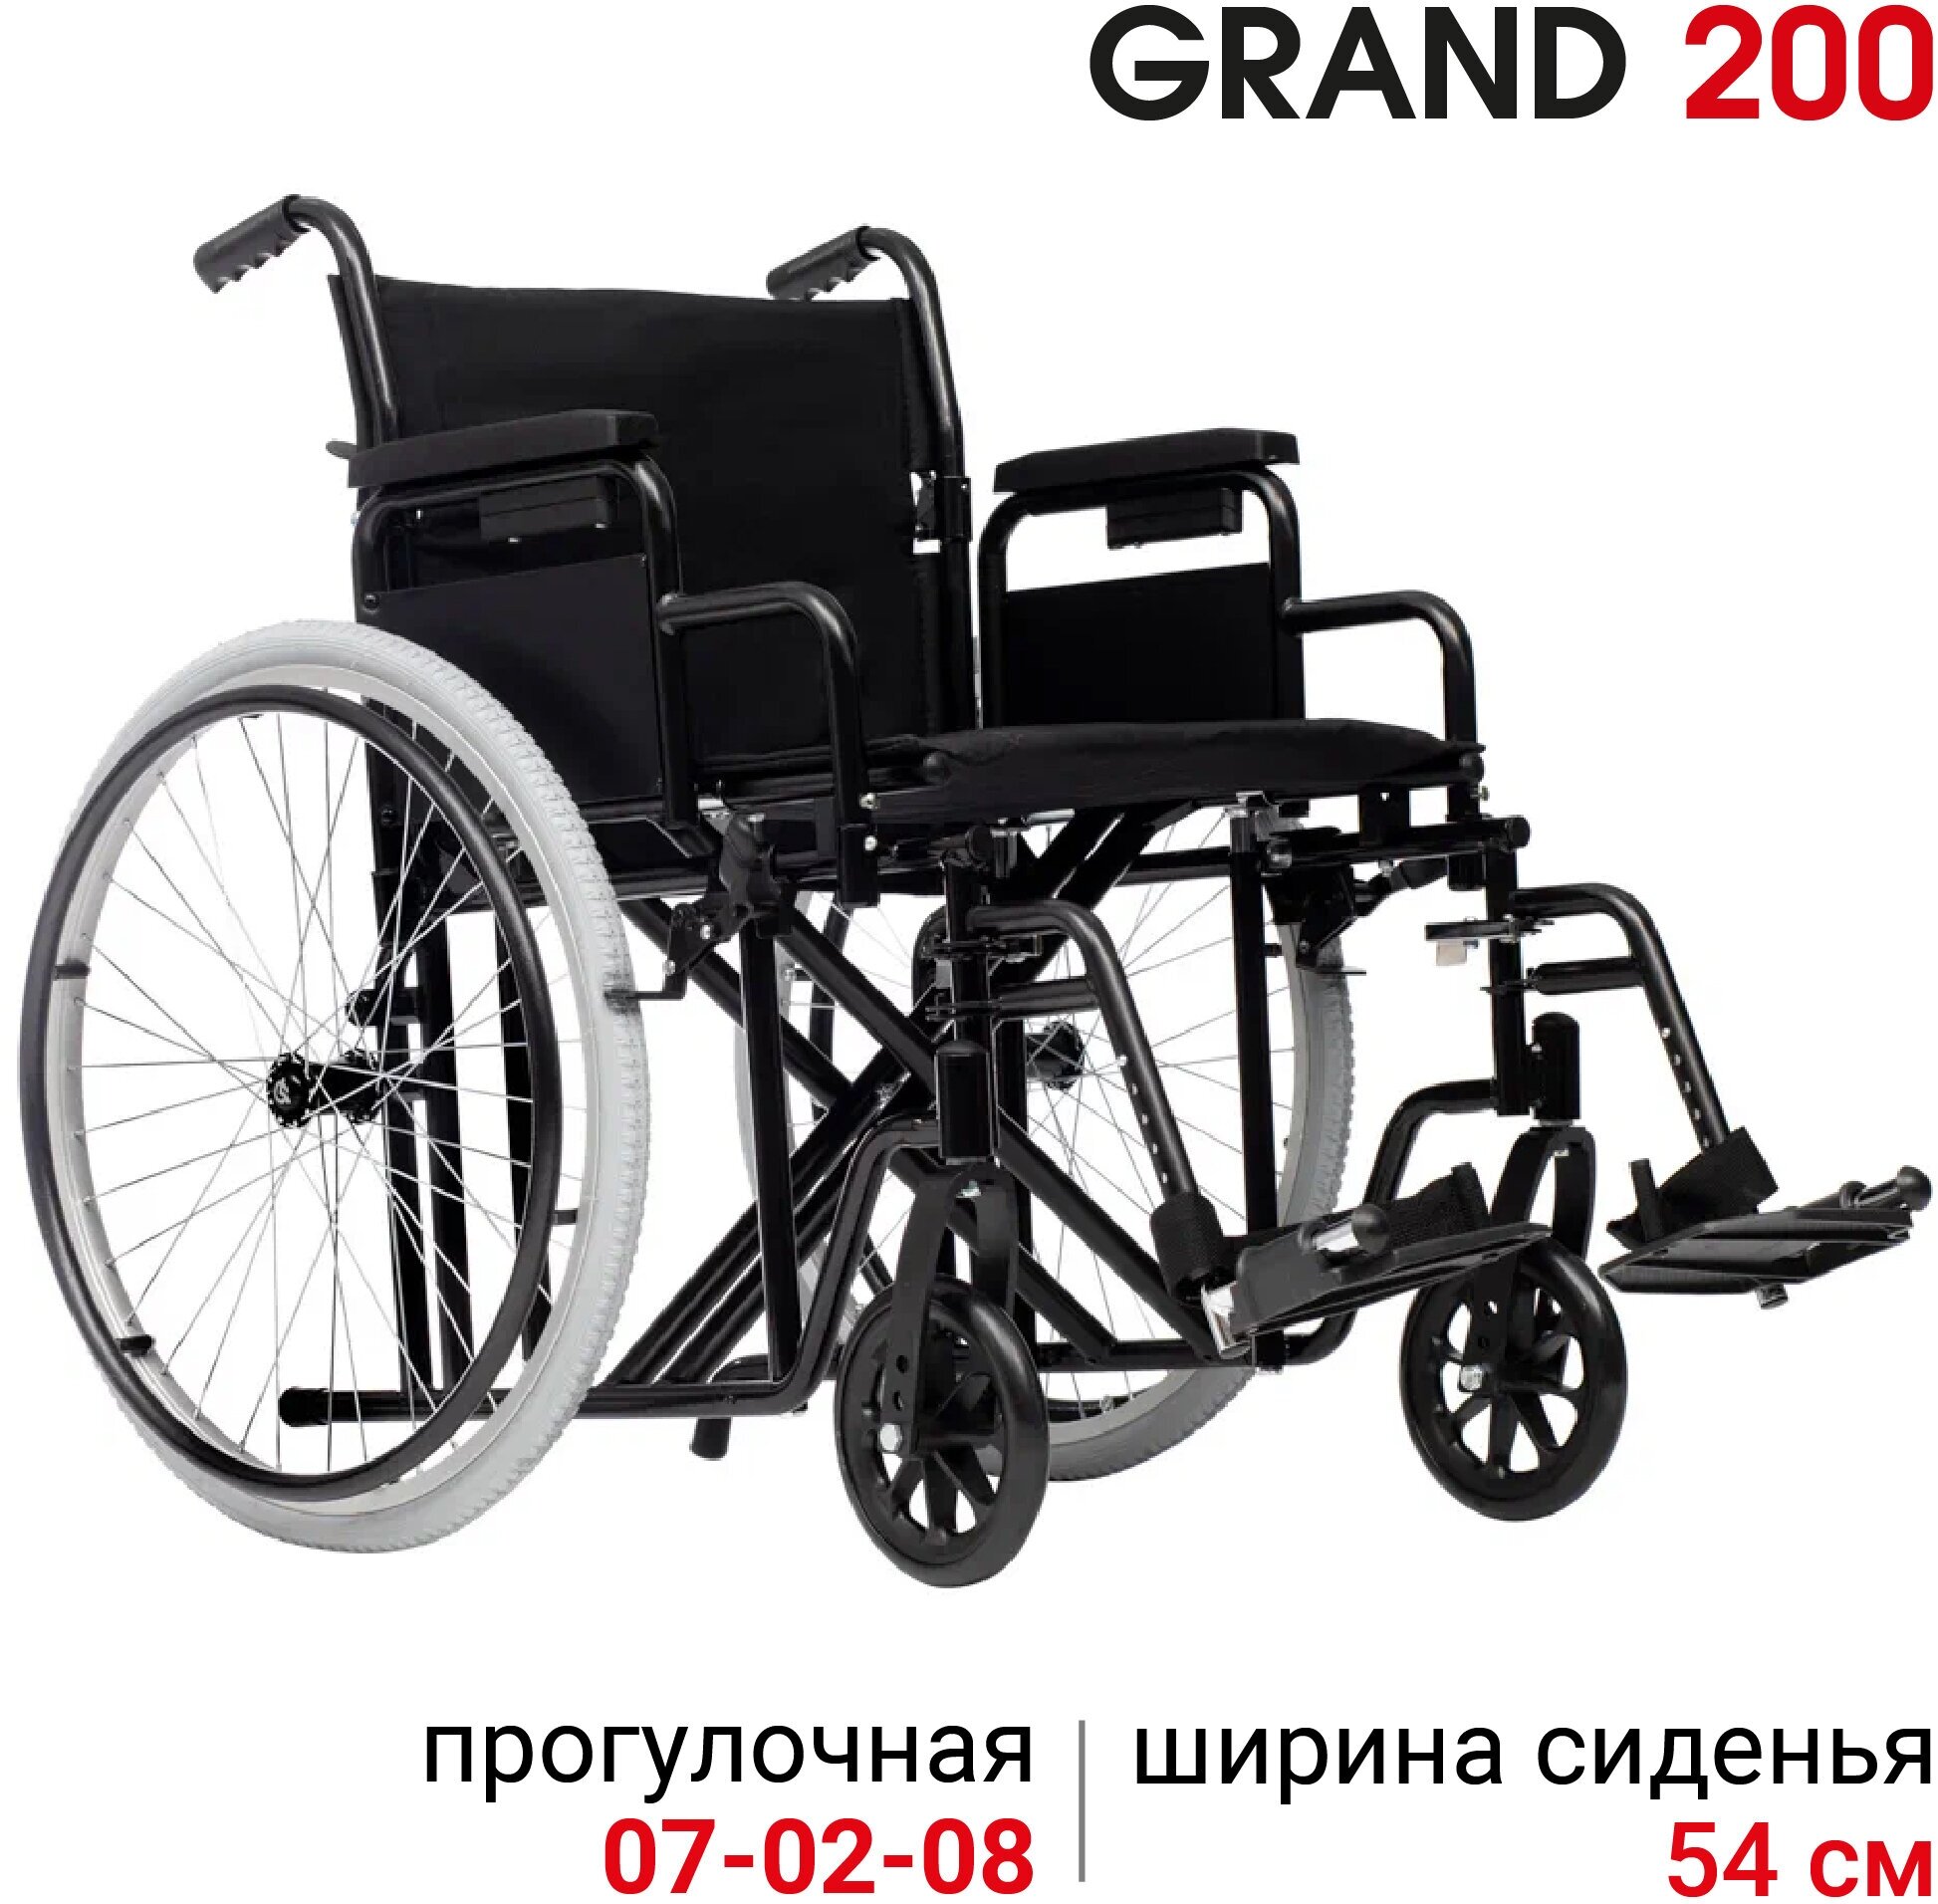 Кресло-коляска инвалидная механическая повышенной грузоподъемности Ortonica Trend 25/Grand 200 ширина сиденья 54 см передние литые, задние пневматические колеса